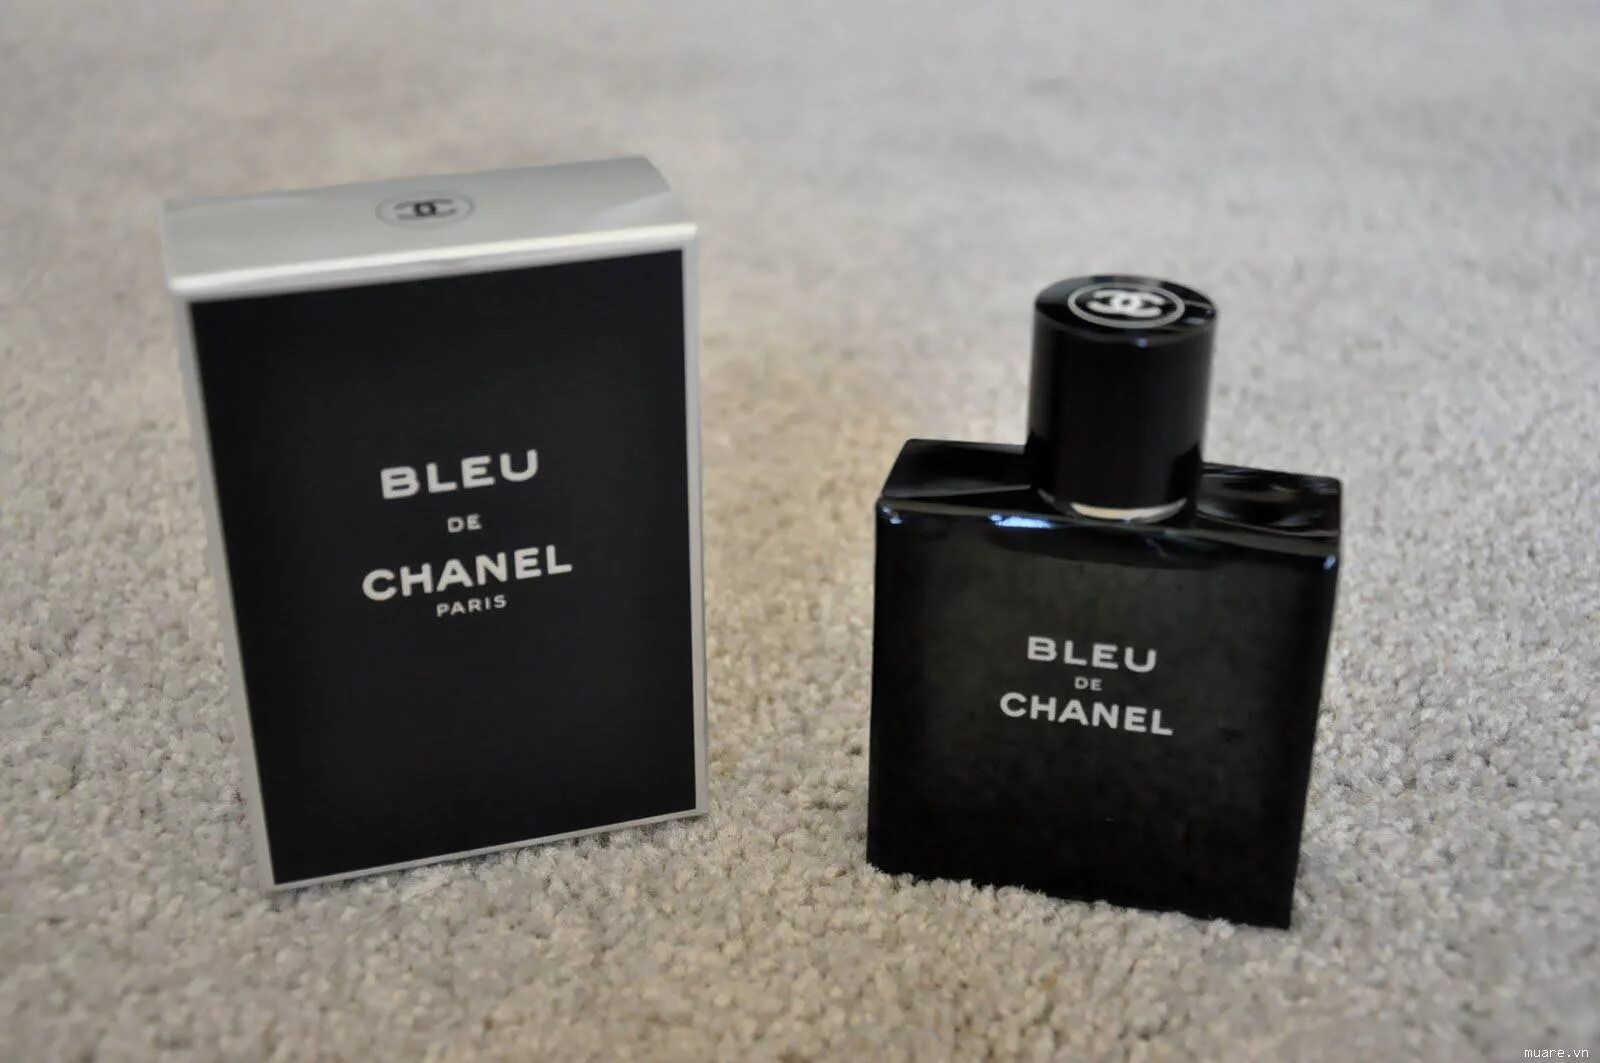 Chanel Blue de Chanel 100ml. Bleu de Chanel Parfum Chanel for men. Chanel bleu de Chanel 100 ml. Шанель Блю мужские 100мл туалетная вода.